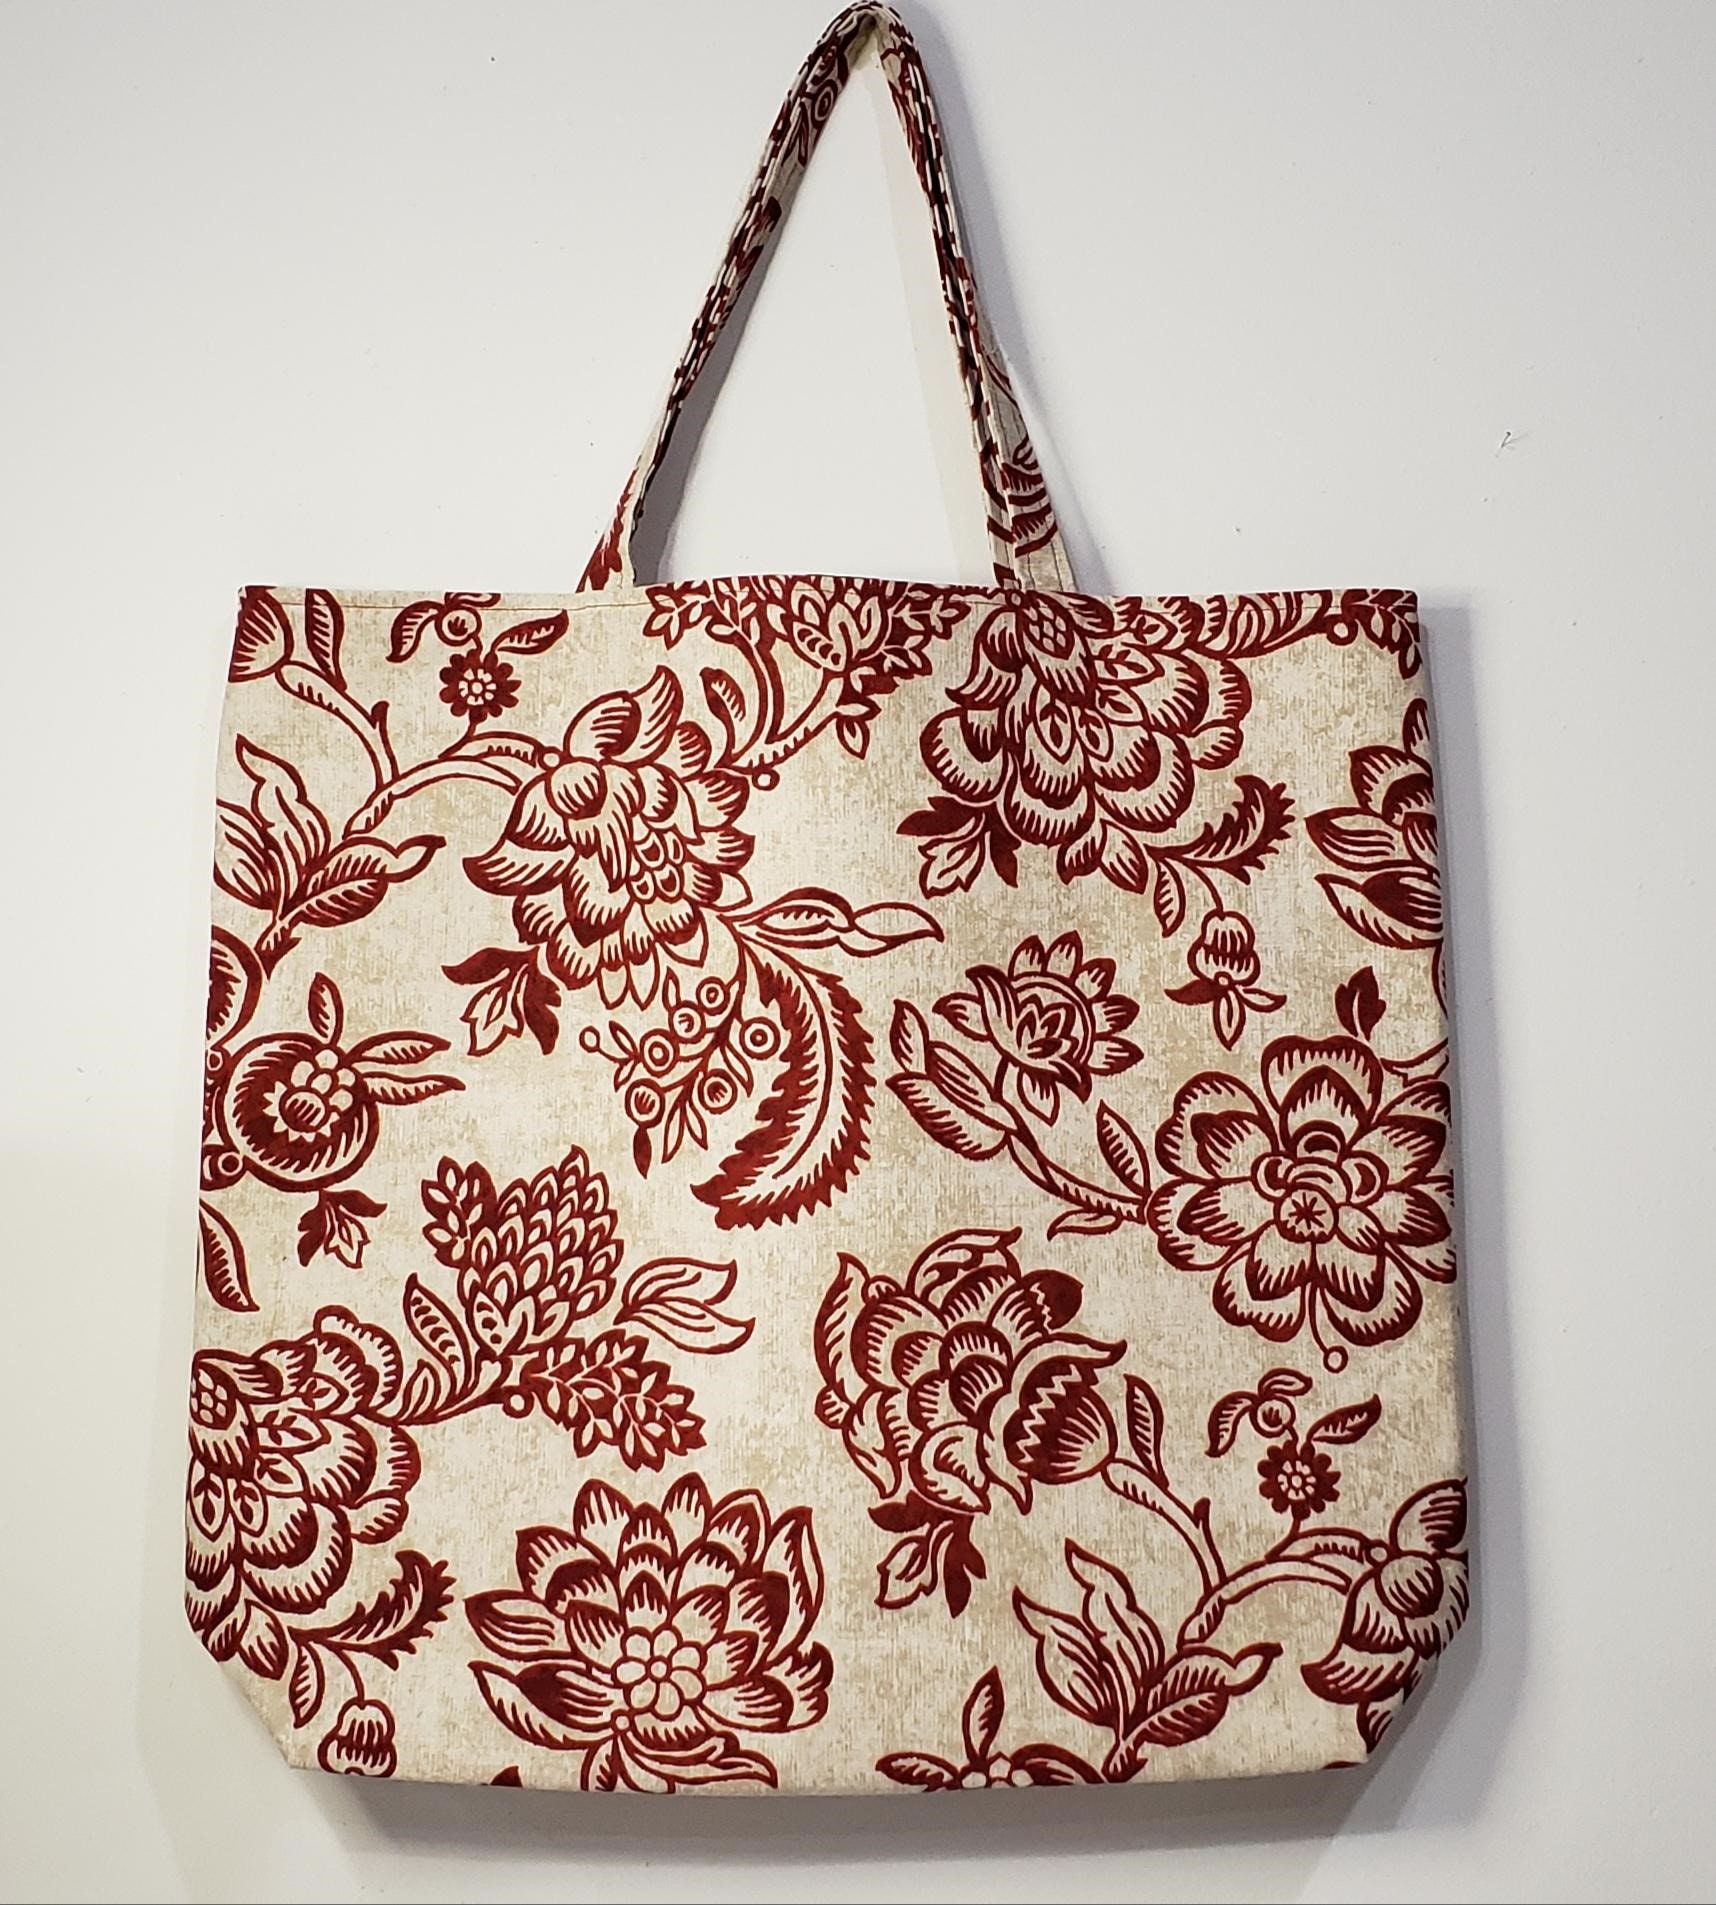 Floral & Fan Tote Bag Reversible Tote Bag Handmade Tote Bag | Etsy